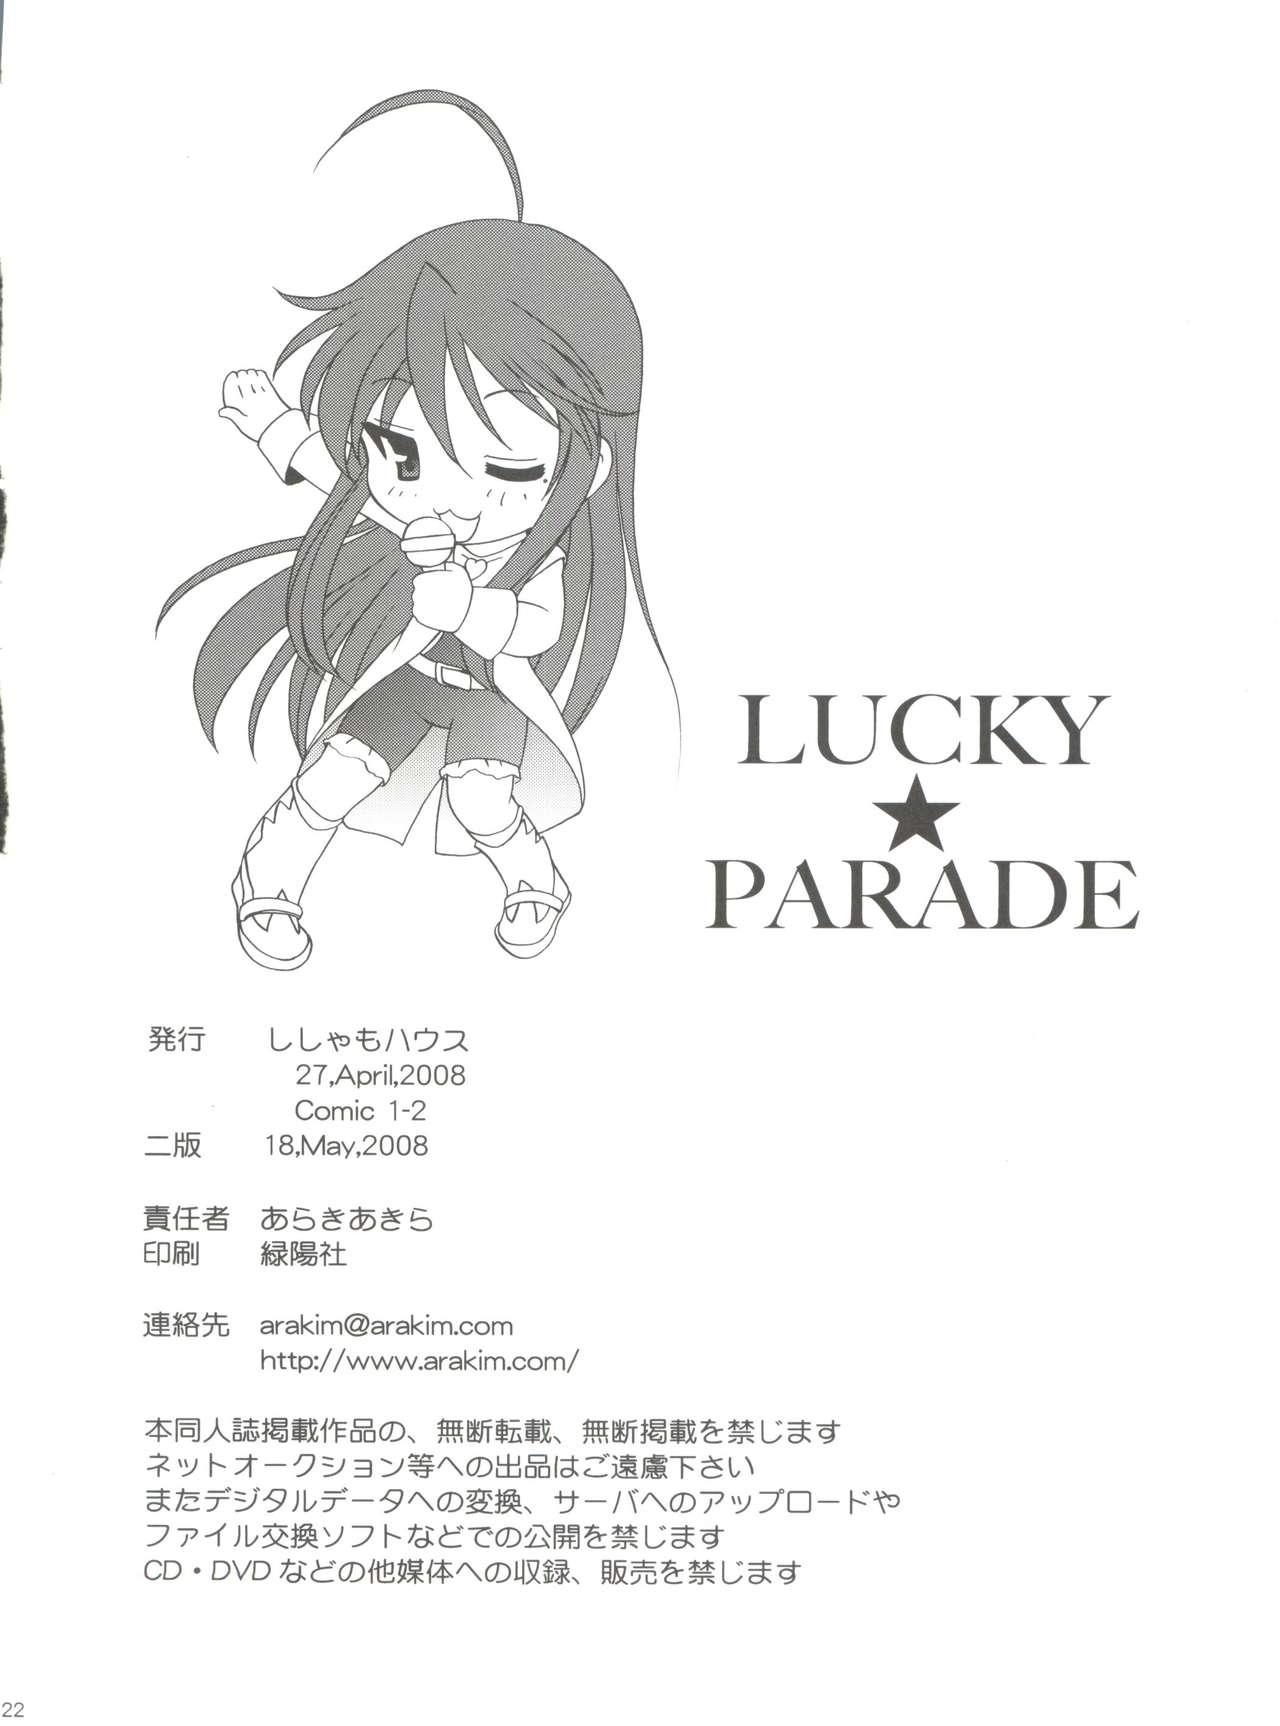 Lucky Parade 20